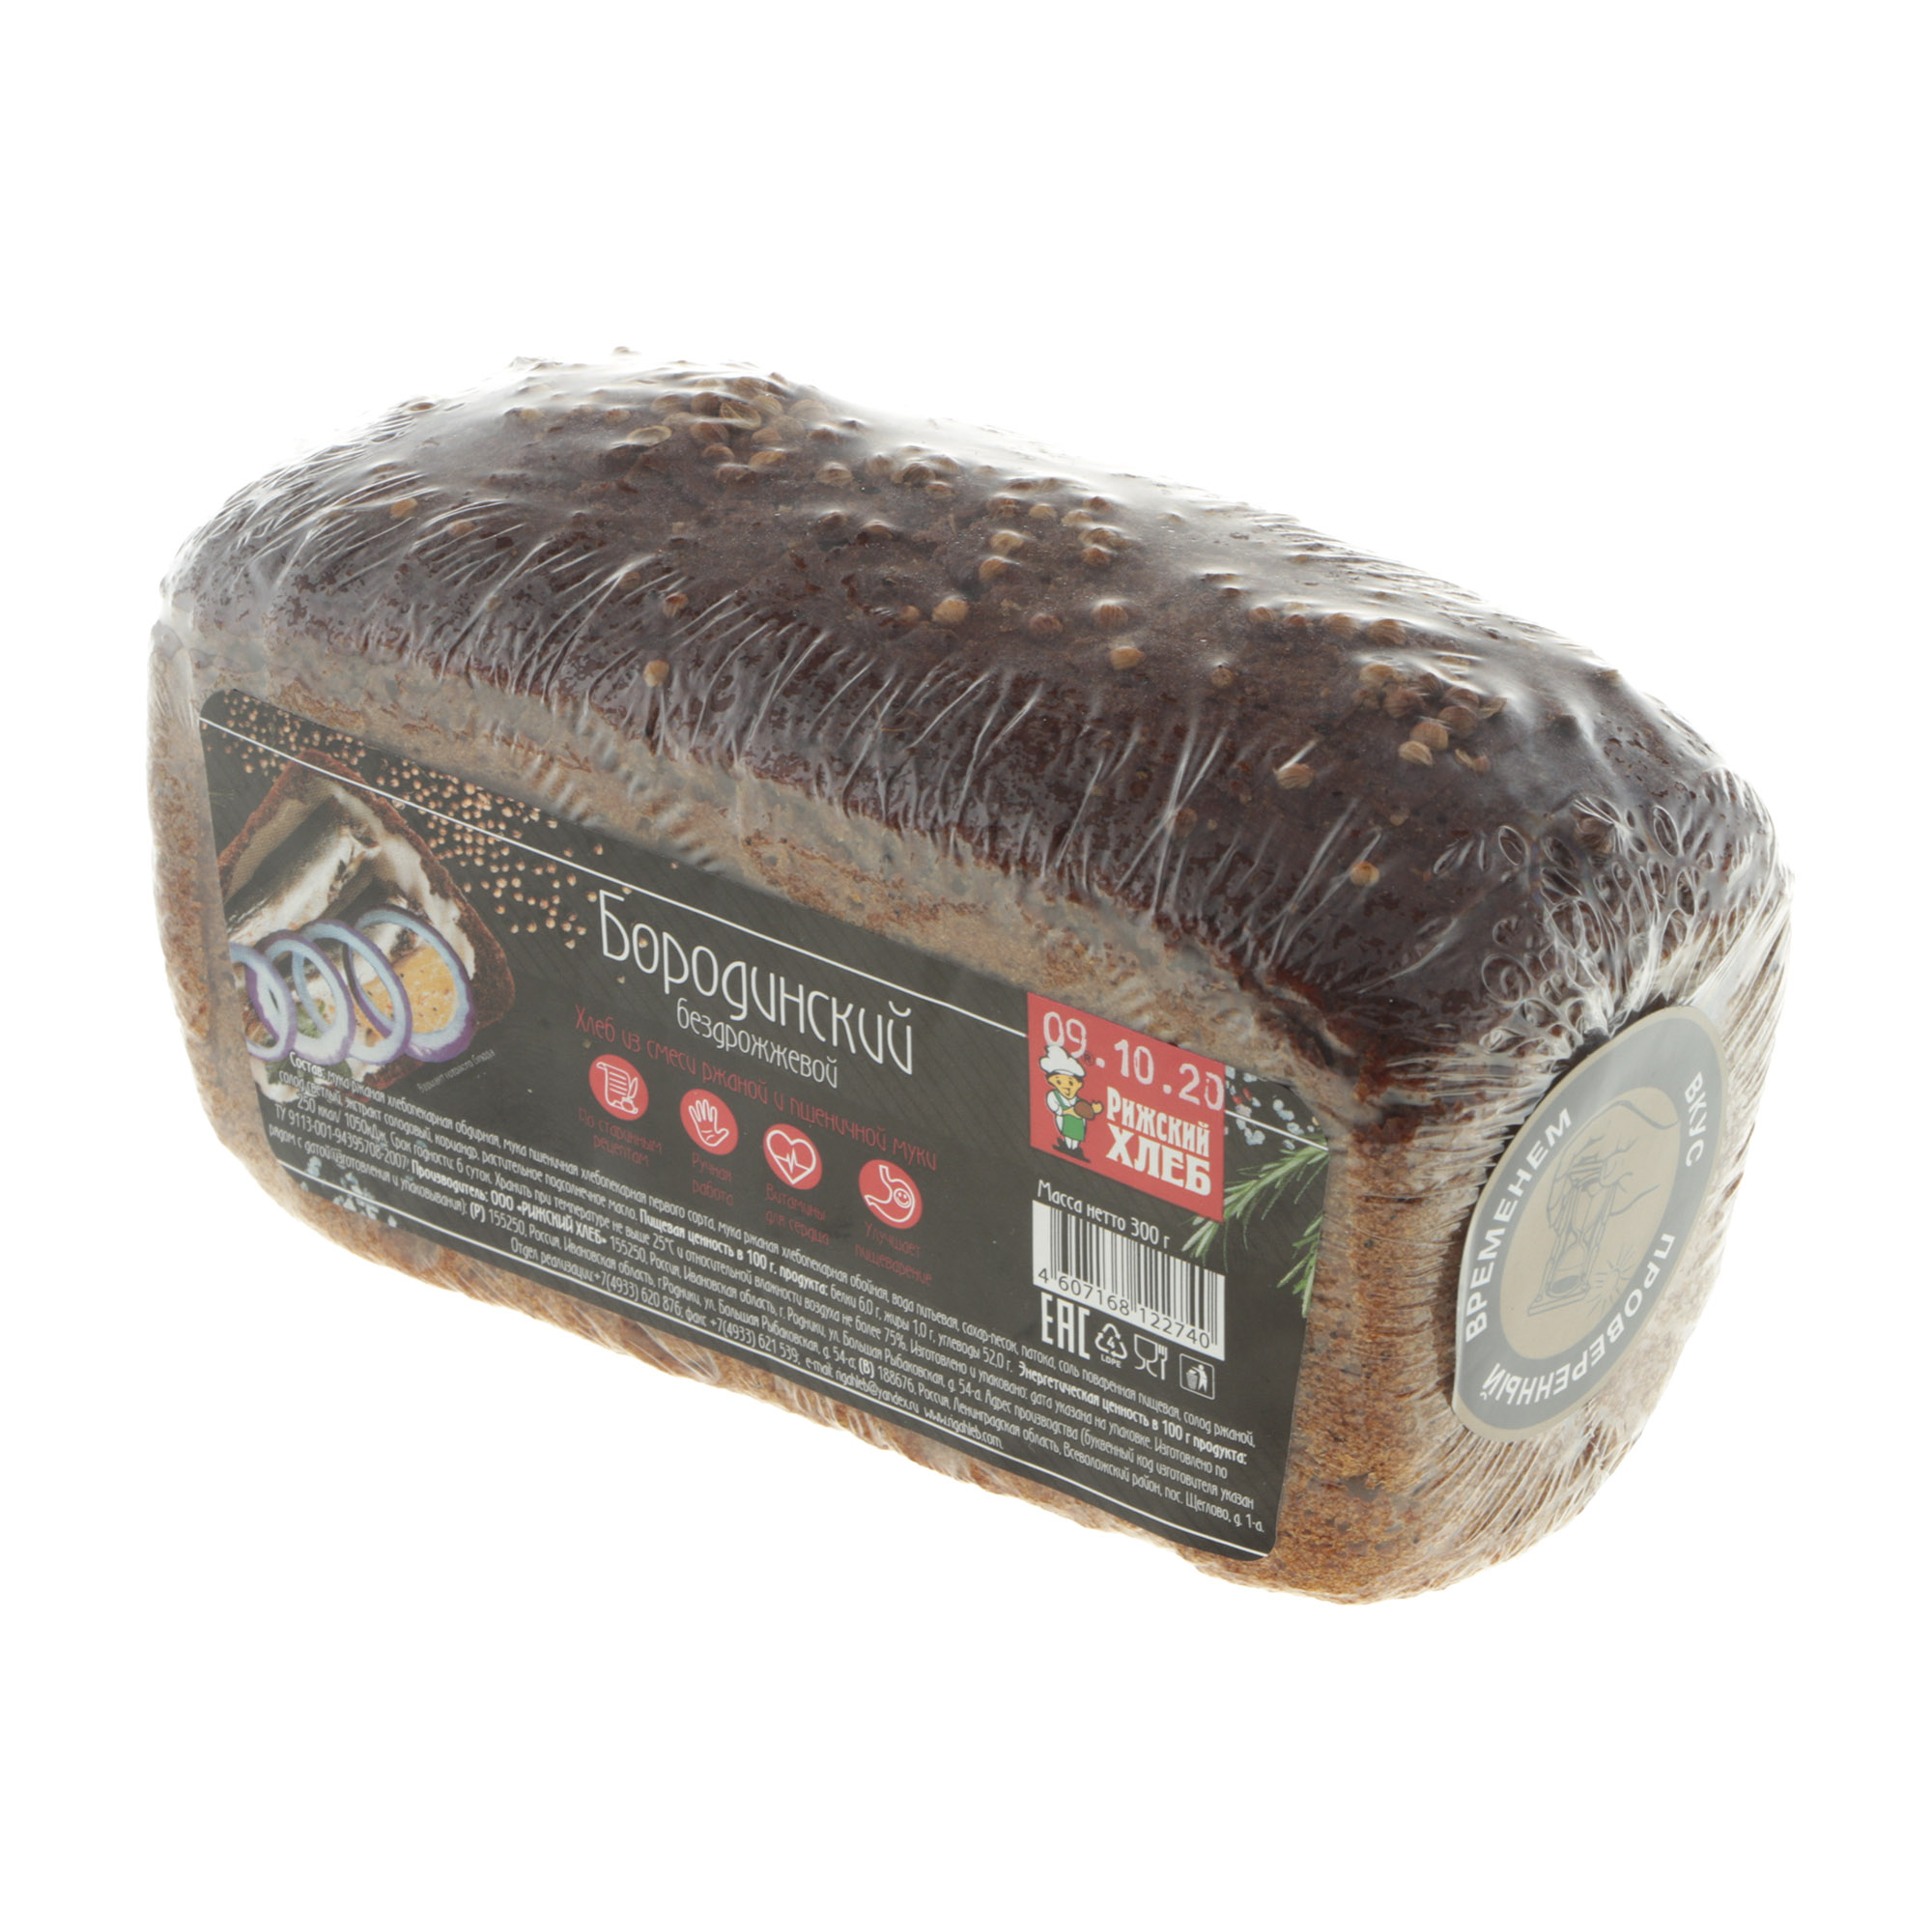 Хлеб Рижский хлеб бородинский 300 г хлеб рижский хлеб ароматный с изюмом 300 г